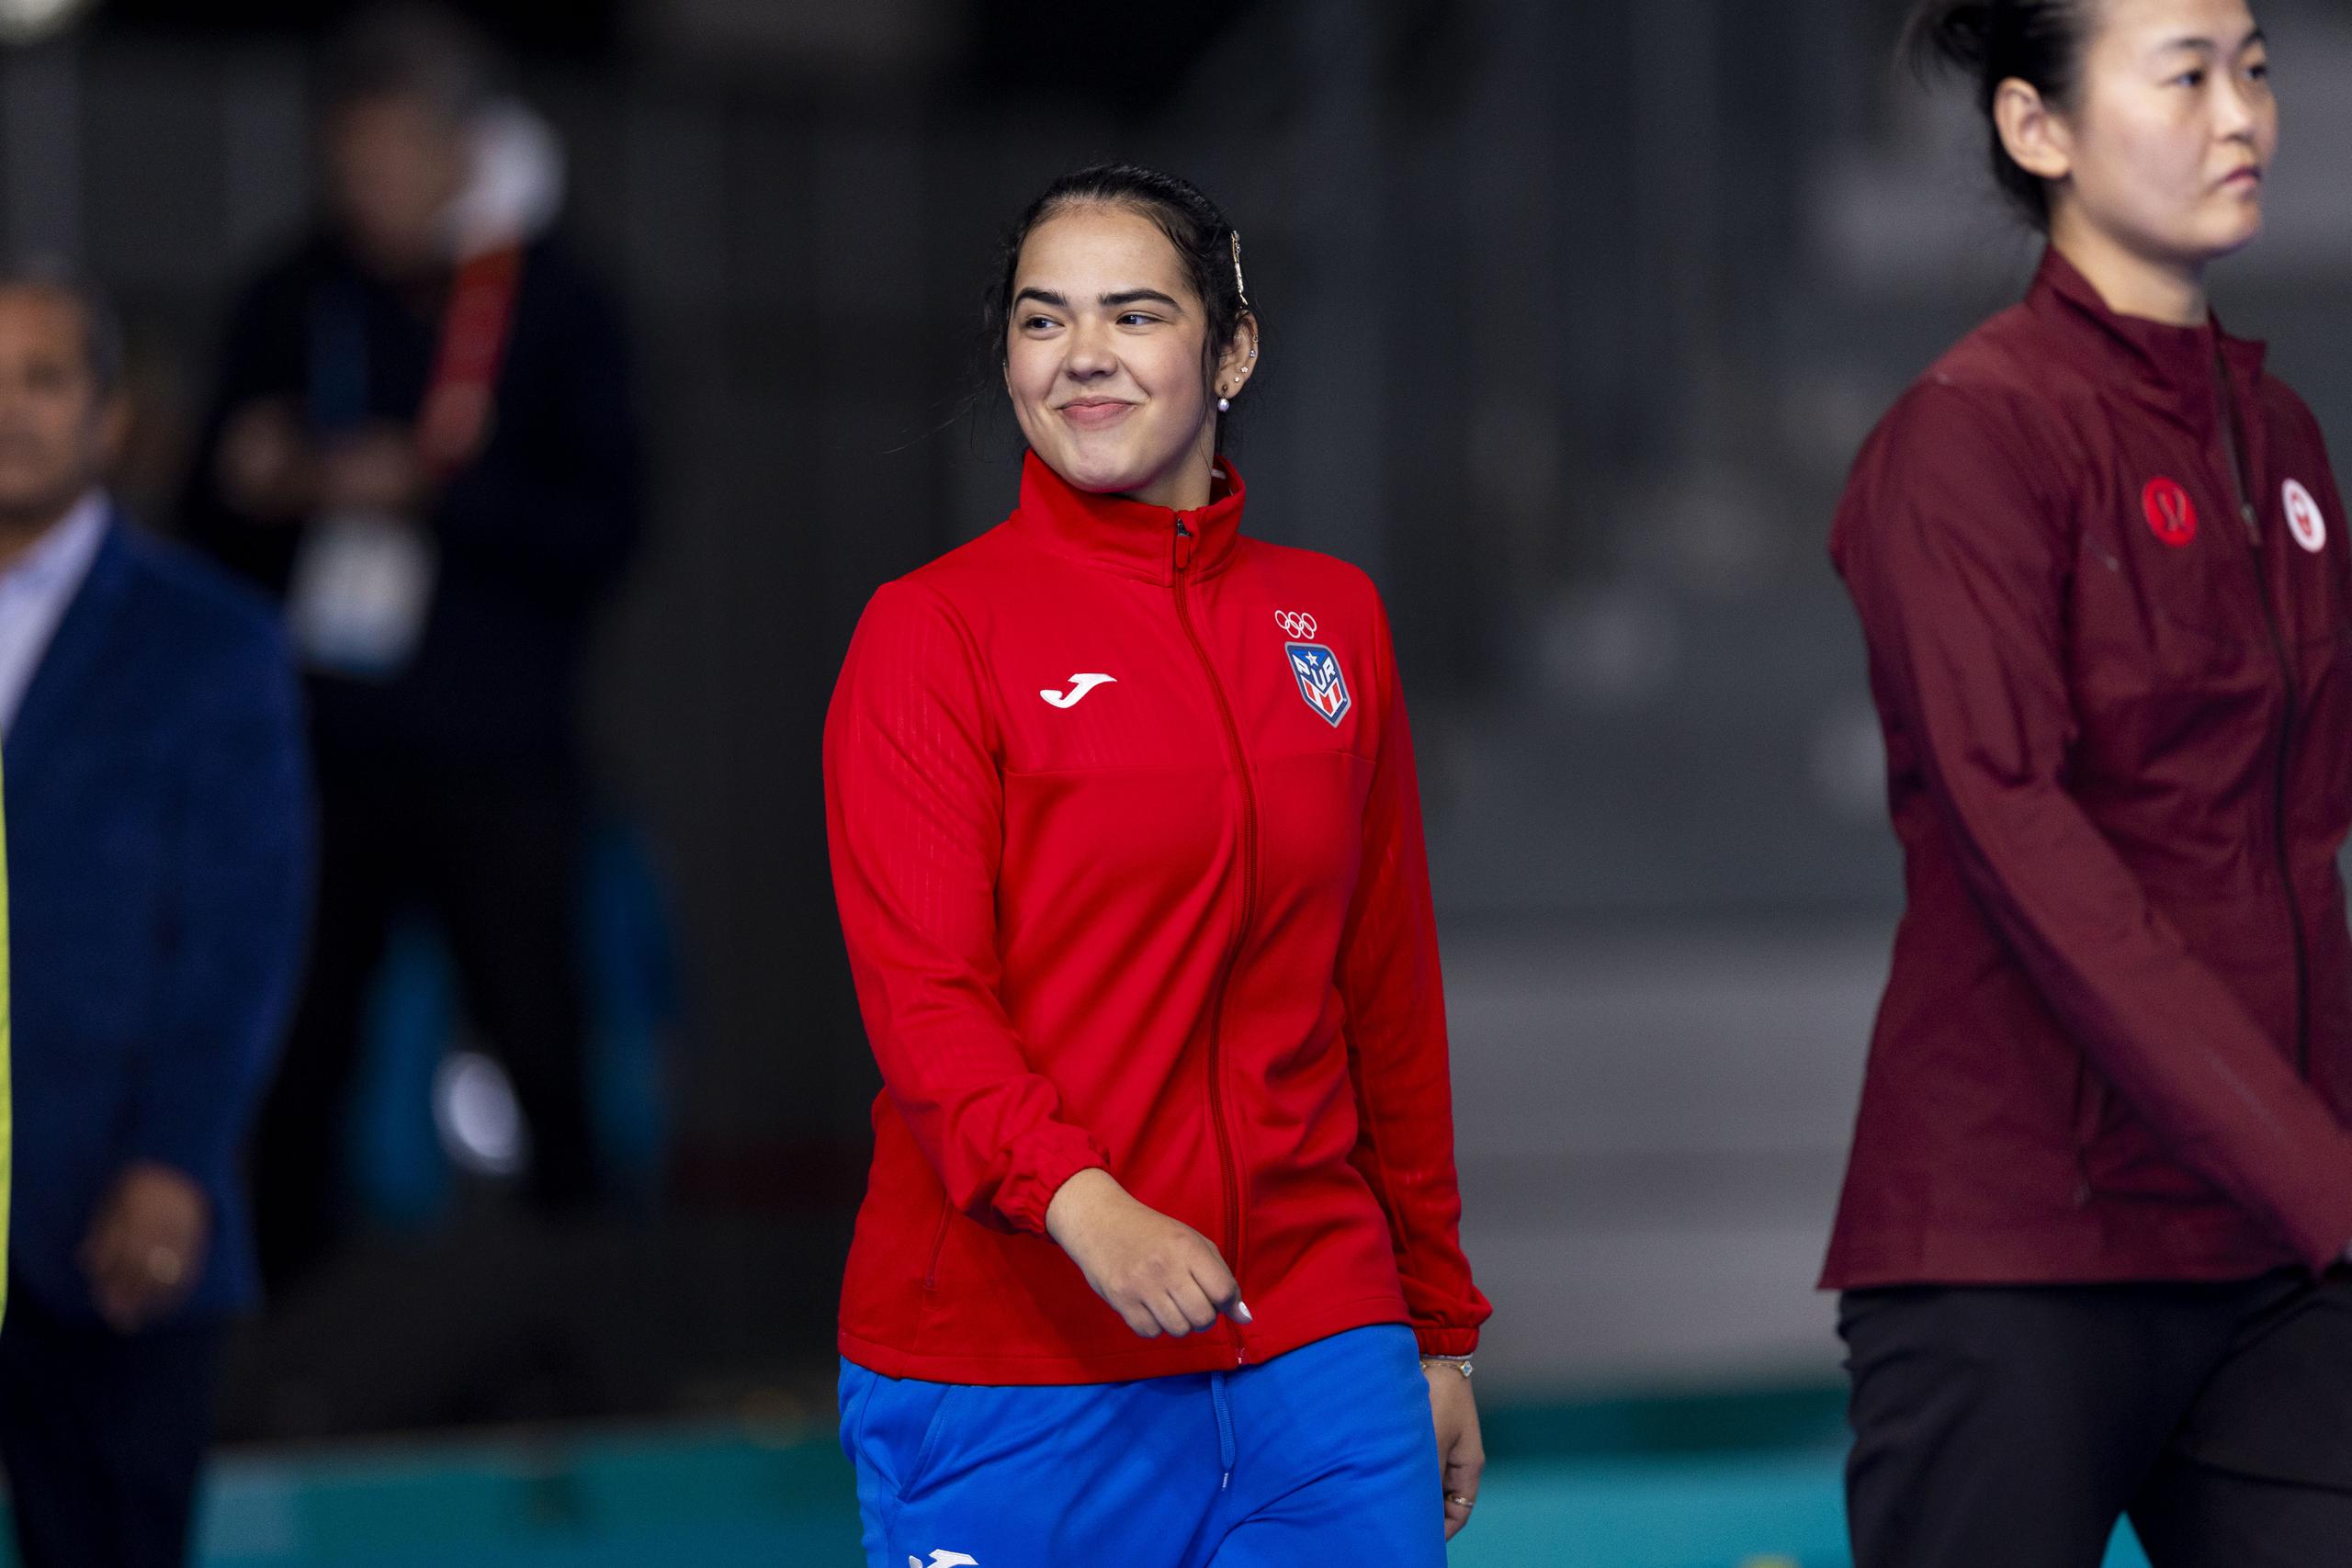 Adriana Díaz es todo sonrisas cuando camina hacia el podio para recibir su medalla de oro.